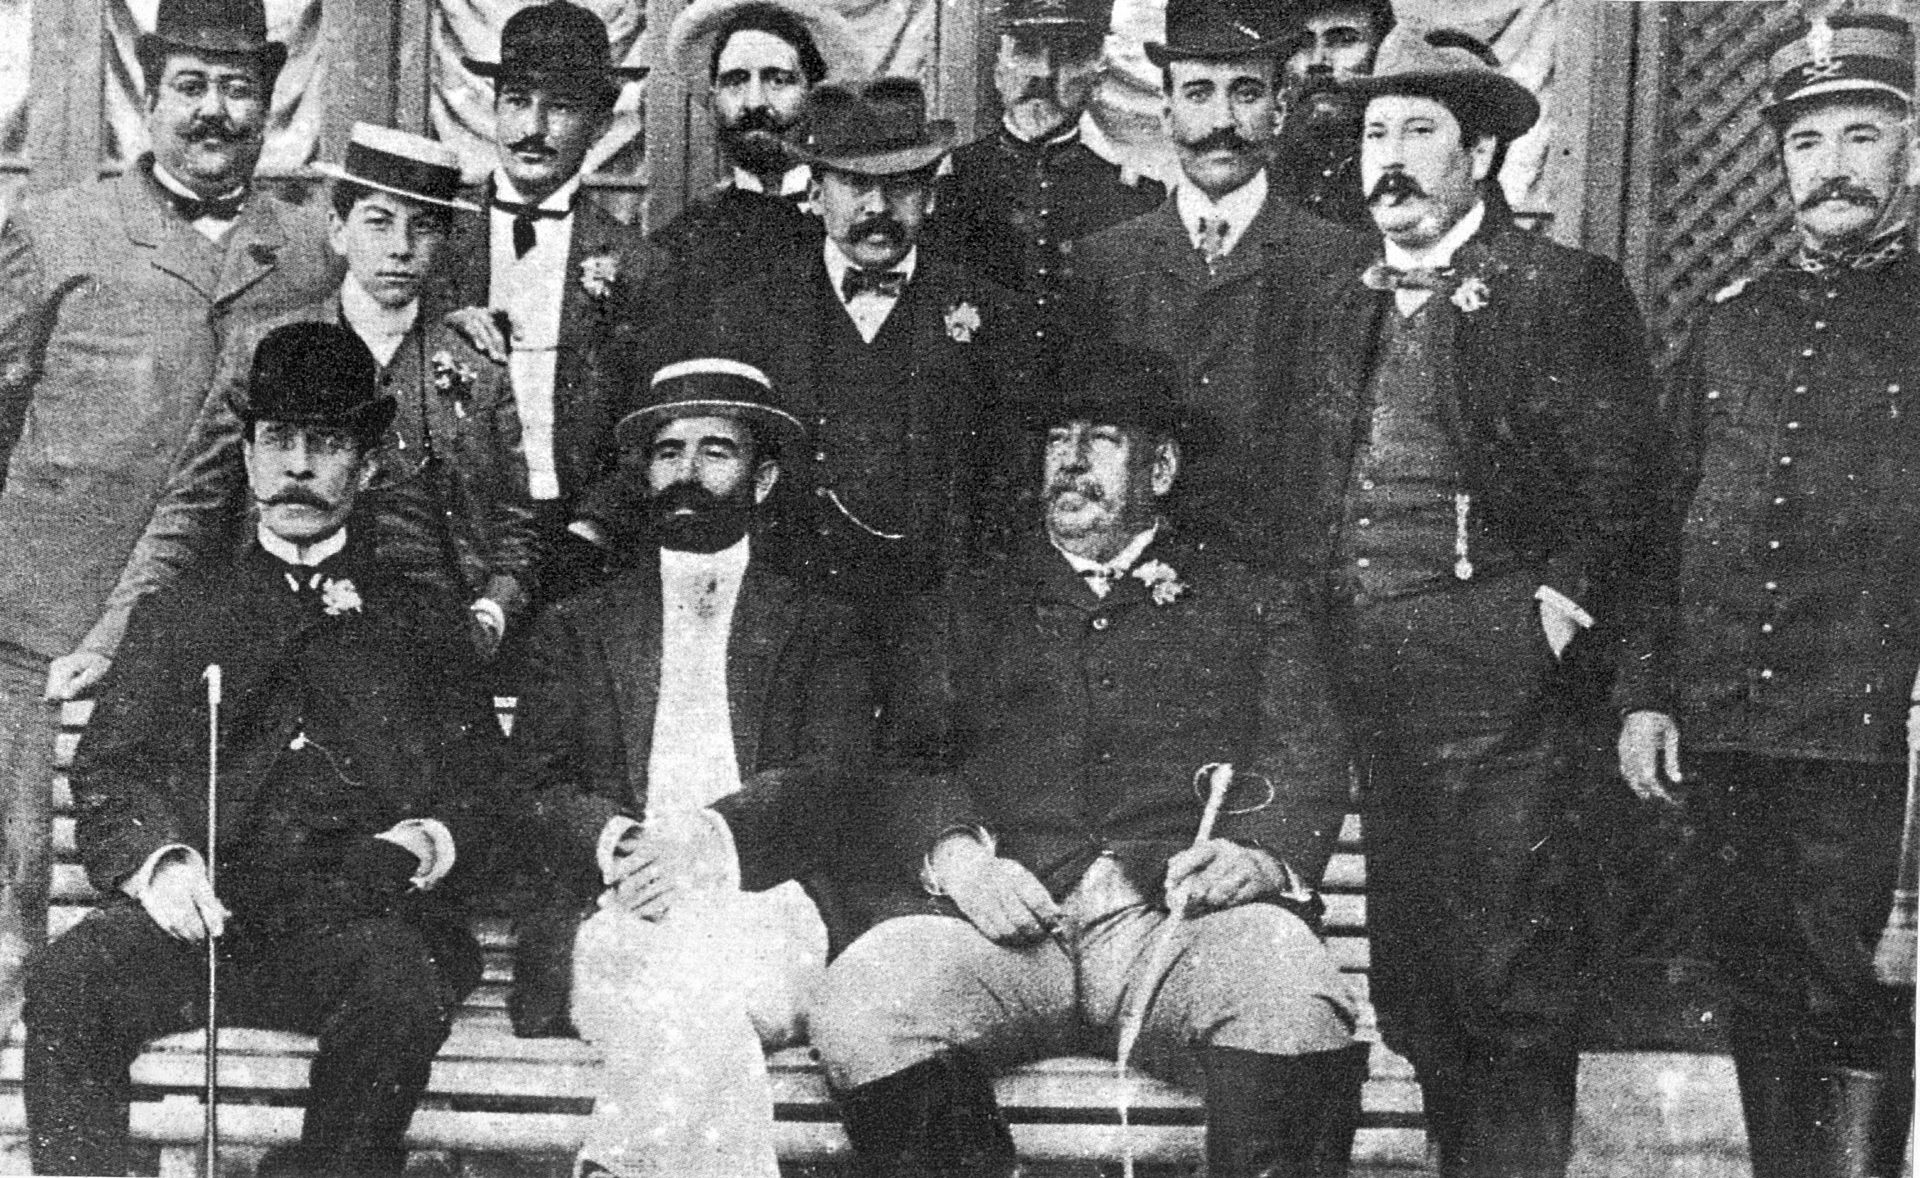 El presidente Batlle, sentado en el extremo derecho. A su lado, con sombrero, el ministro Diego Pons, hijo de mallorquines. Fuente Wikimedia Commons